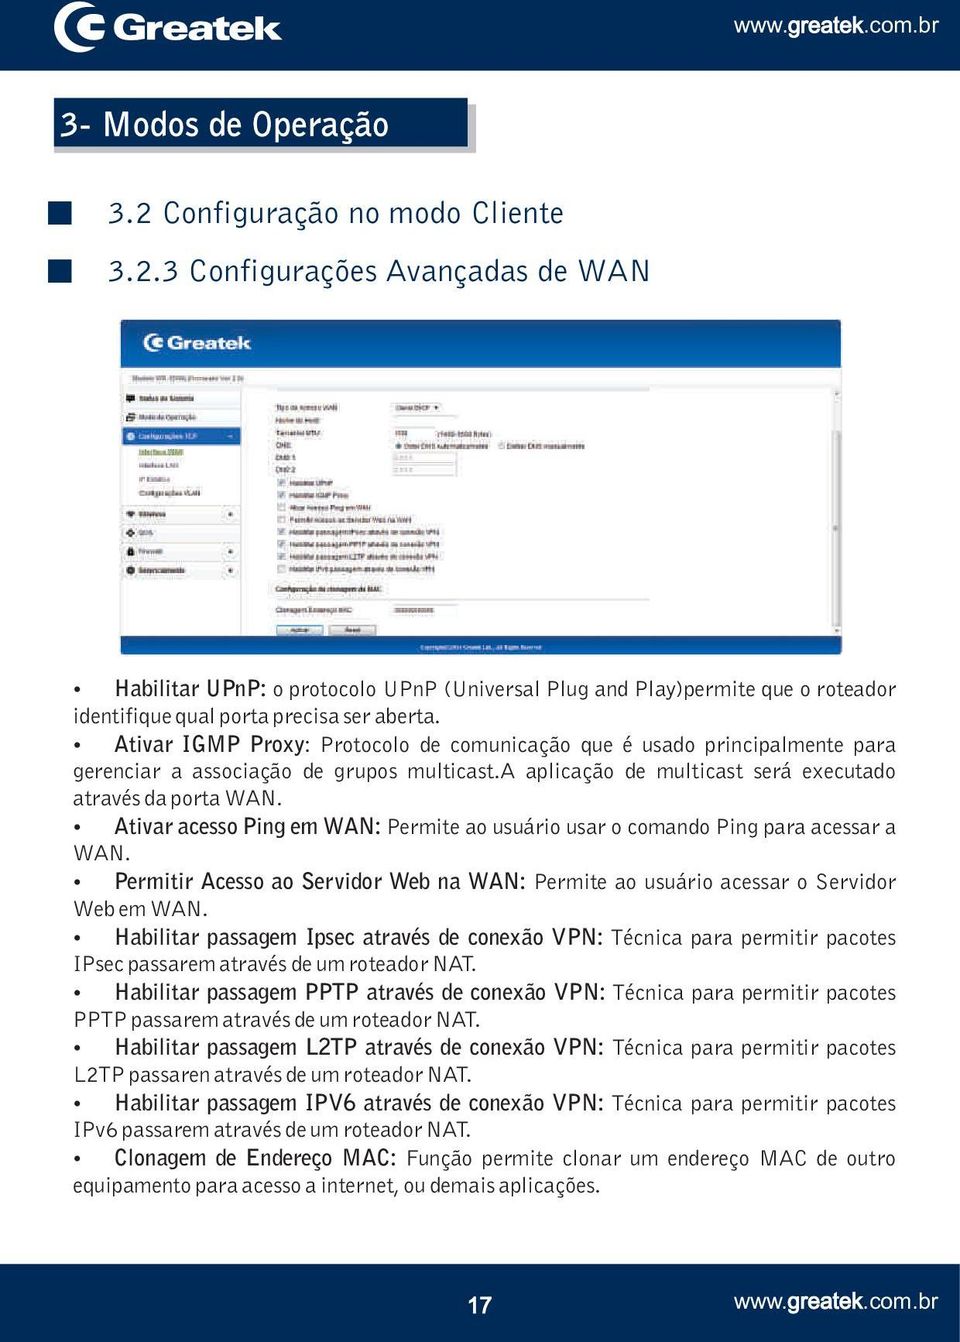 Ativar acesso Ping em WAN: Permite ao usuário usar o comando Ping para acessar a WAN. Permitir Acesso ao Servidor Web na WAN: Permite ao usuário acessar o Servidor Web em WAN.